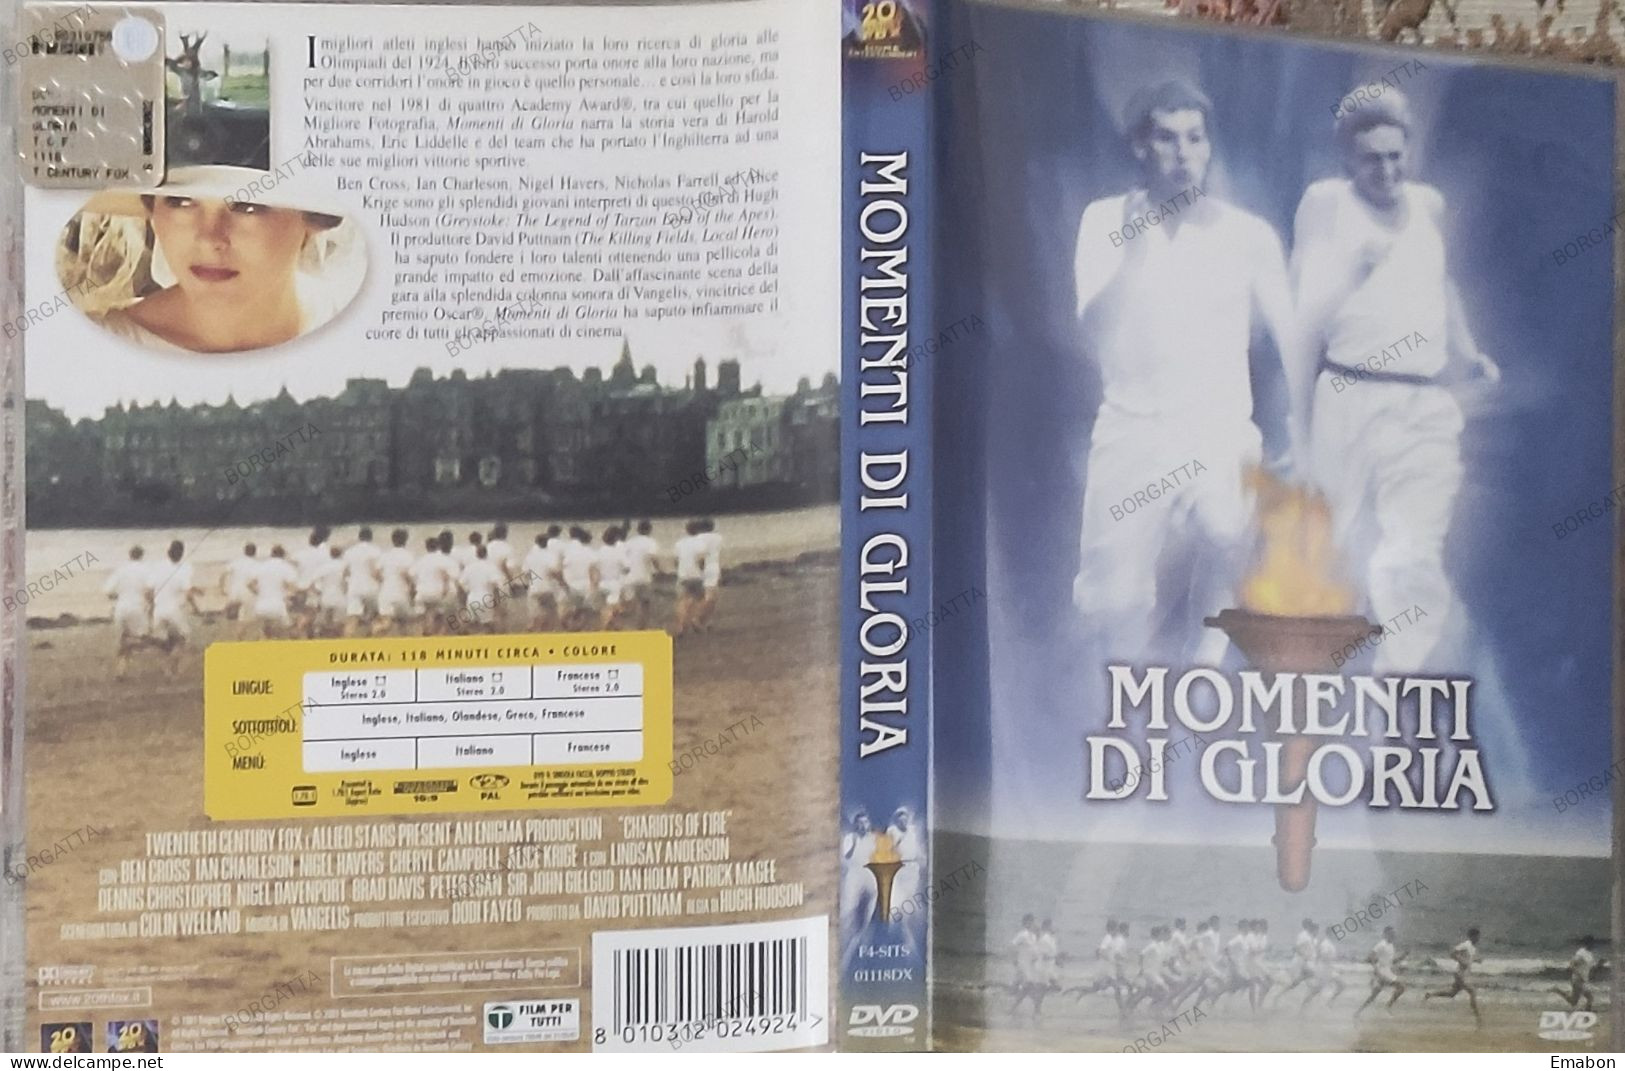 BORGATTA - DRAMMA - Dvd  " MOMENTI DI GLORIA  " HUGH HUDSON, BEN CROSS - PAL 2 - 20THFOX 2001 -  USATO In Buono Stato - Drama